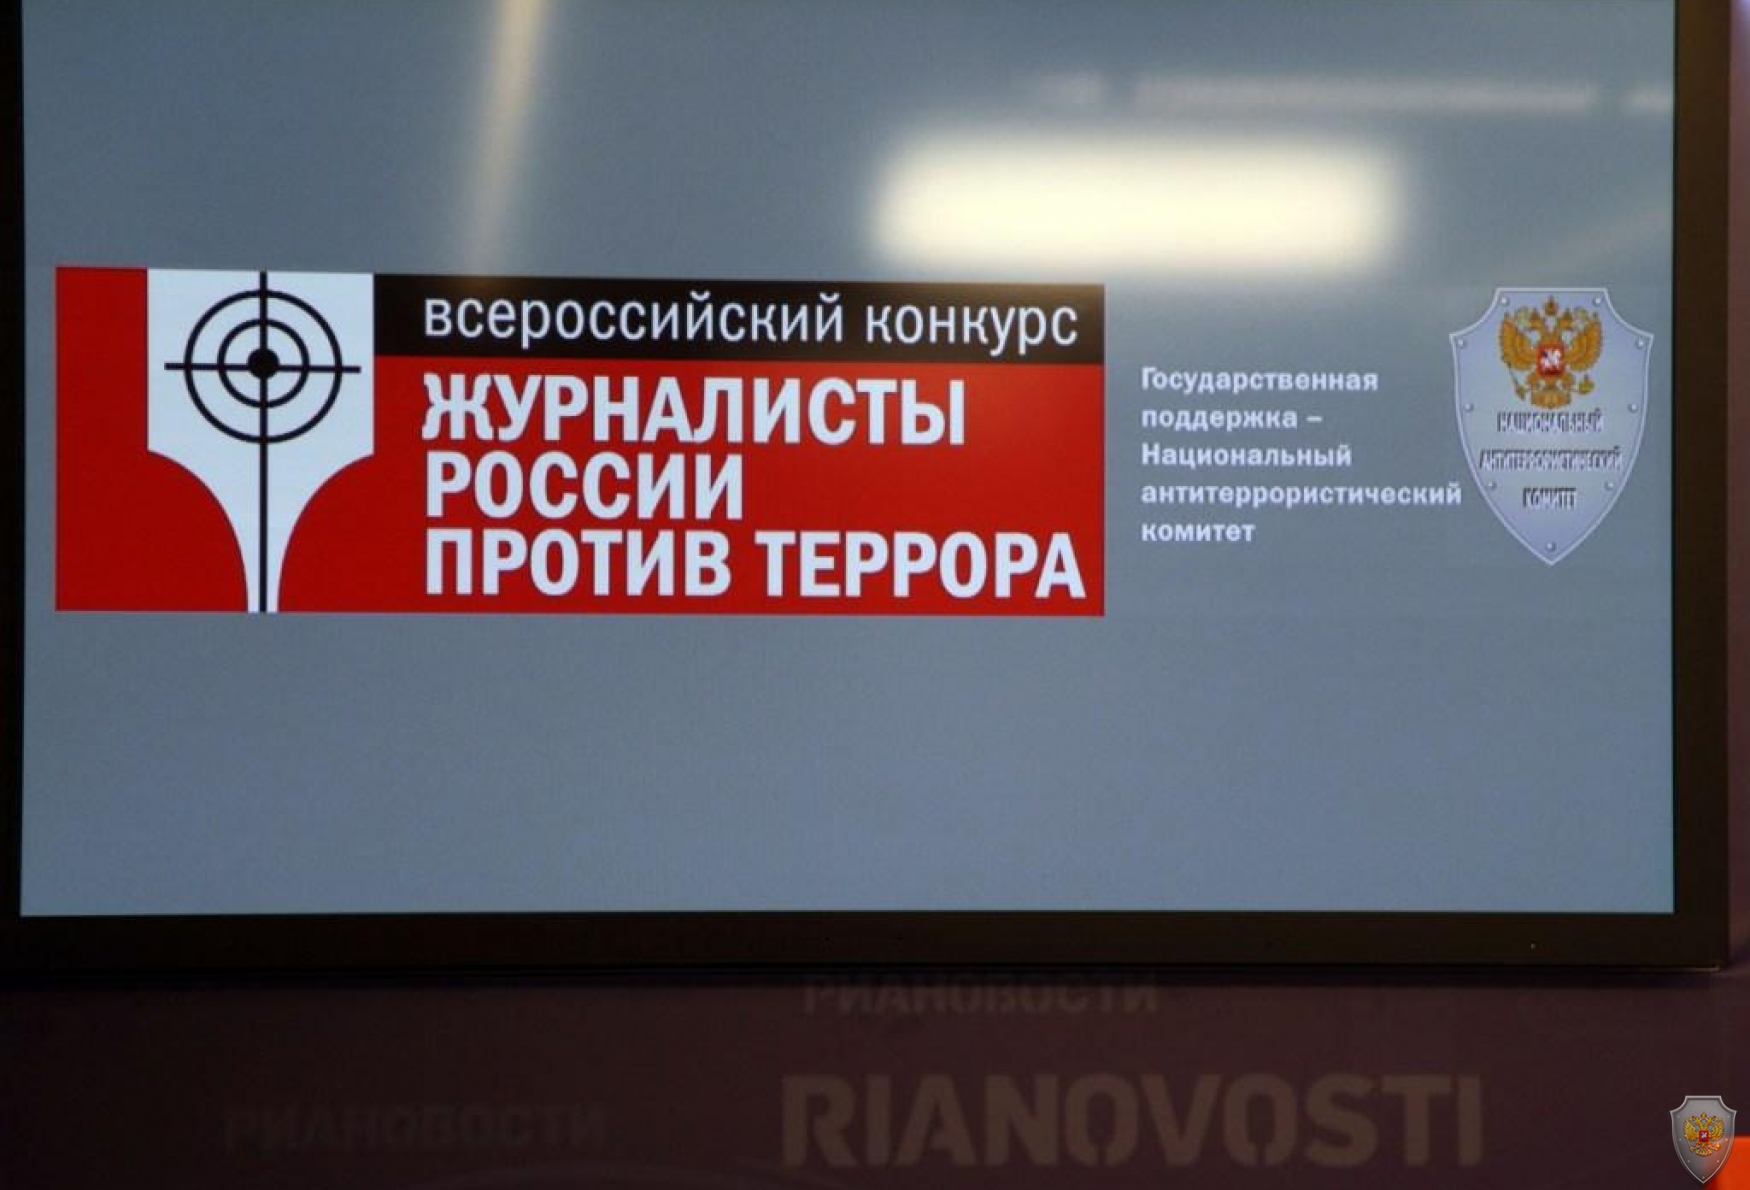 На пресс-конференции в РИА «Новости» состоялось анонсирование всероссийского конкурса «Журналисты России против террора».